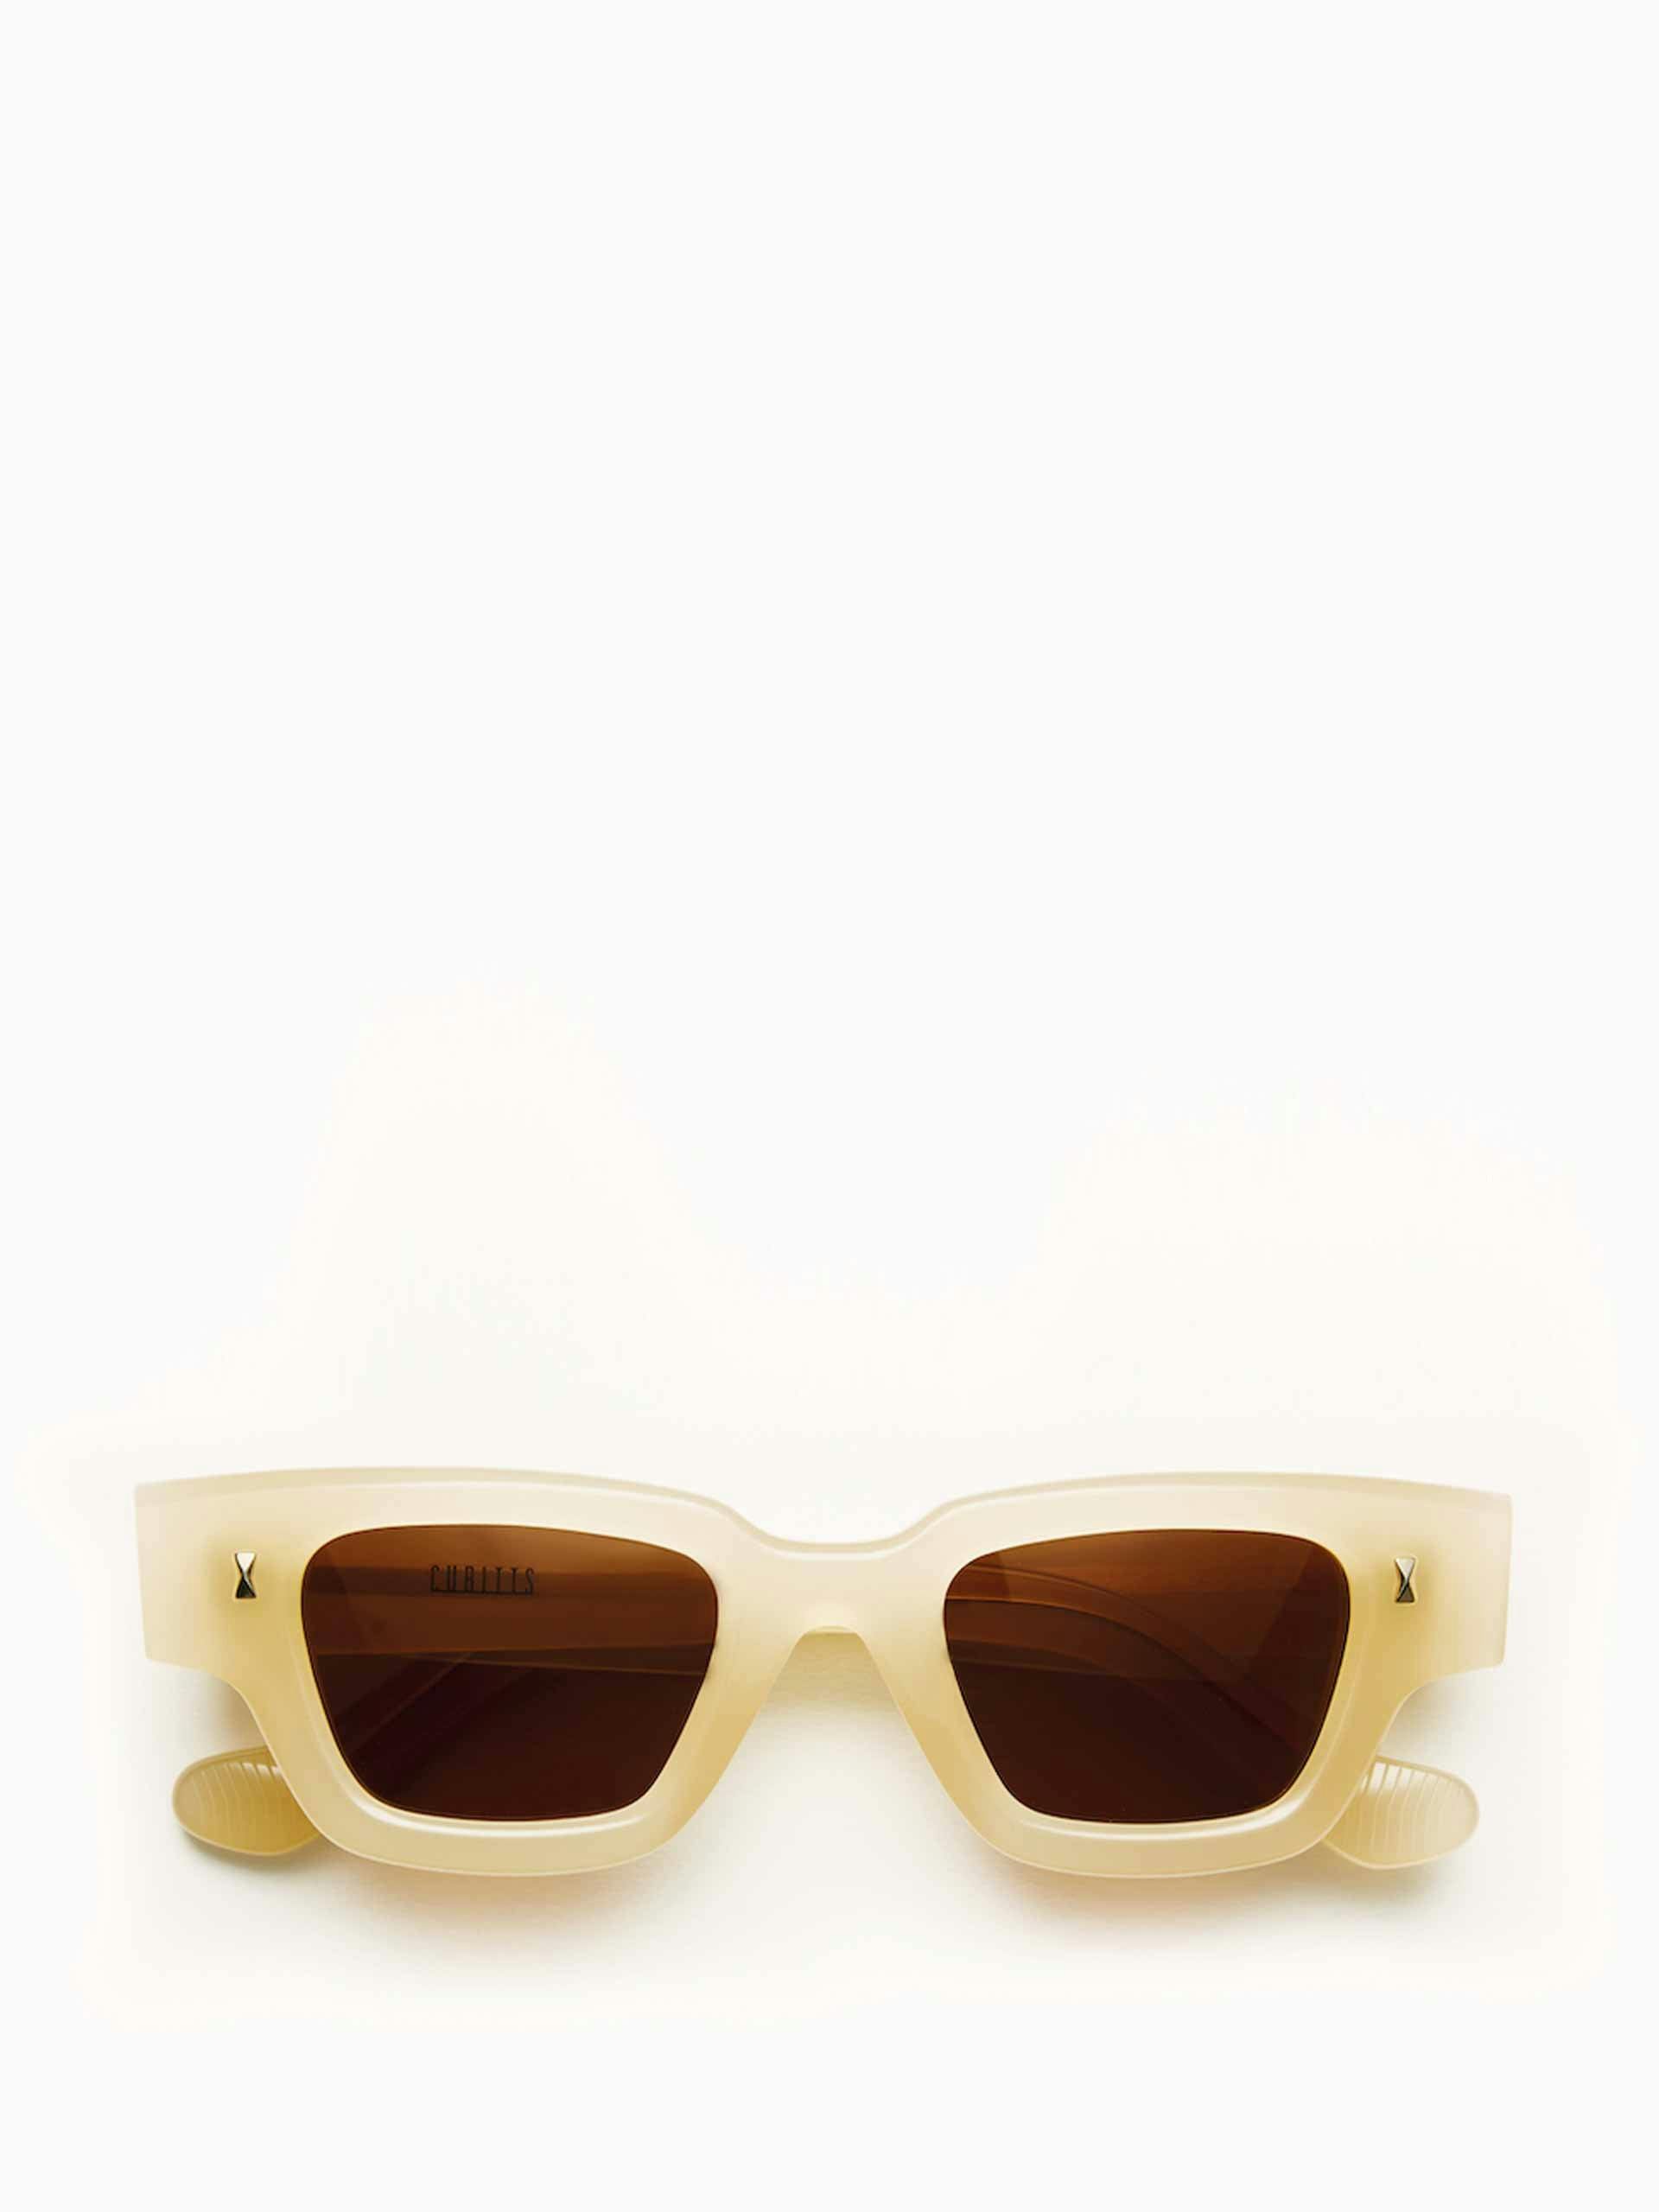 Rectangular lens acetate sunglasses